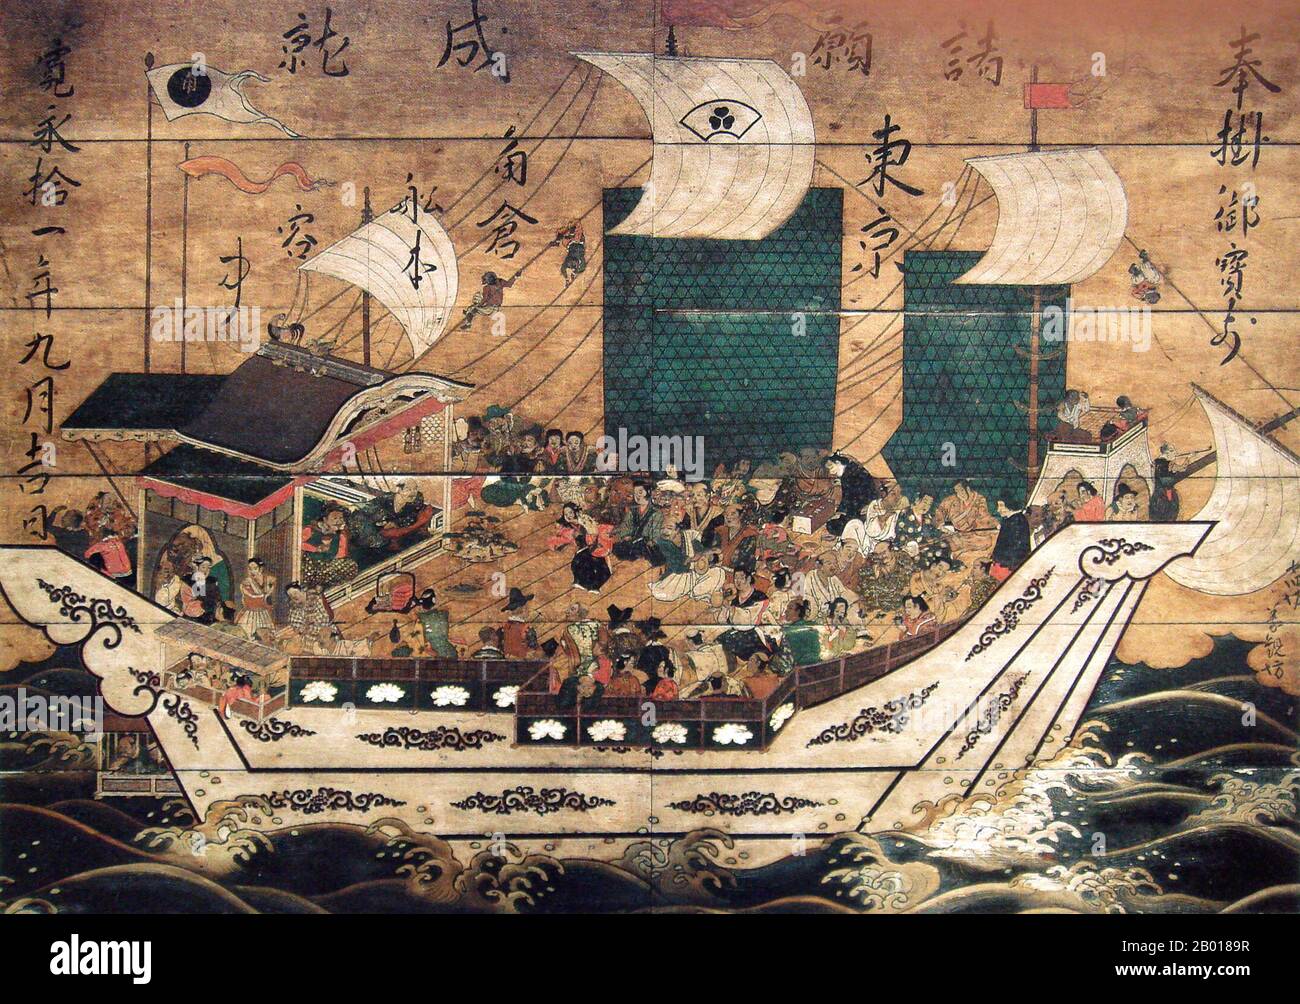 Japon: Navire à phoque rouge Suminokura avec des étrangers. Peinture de plaque de bois du temple Kiyomizu-dera, Kyoto, c. 1633. Shuinsen, ou «navires de Sceau rouge», étaient des navires marchands japonais à voile à destination des ports d'Asie du Sud-est avec un brevet scellé à rouge délivré par le shogunat Tokugawa au début de la première moitié du 17th siècle. Entre 1600 et 1635, plus de 350 navires japonais sont allés à l'étranger dans le cadre de ce système de permis. Les marchands japonais exportaient principalement de l'argent, des diamants, du cuivre, des épées et d'autres objets, et importaient de la soie chinoise ainsi que certains produits de l'Asie du Sud-est (comme le sucre et les peaux de cerfs). Banque D'Images